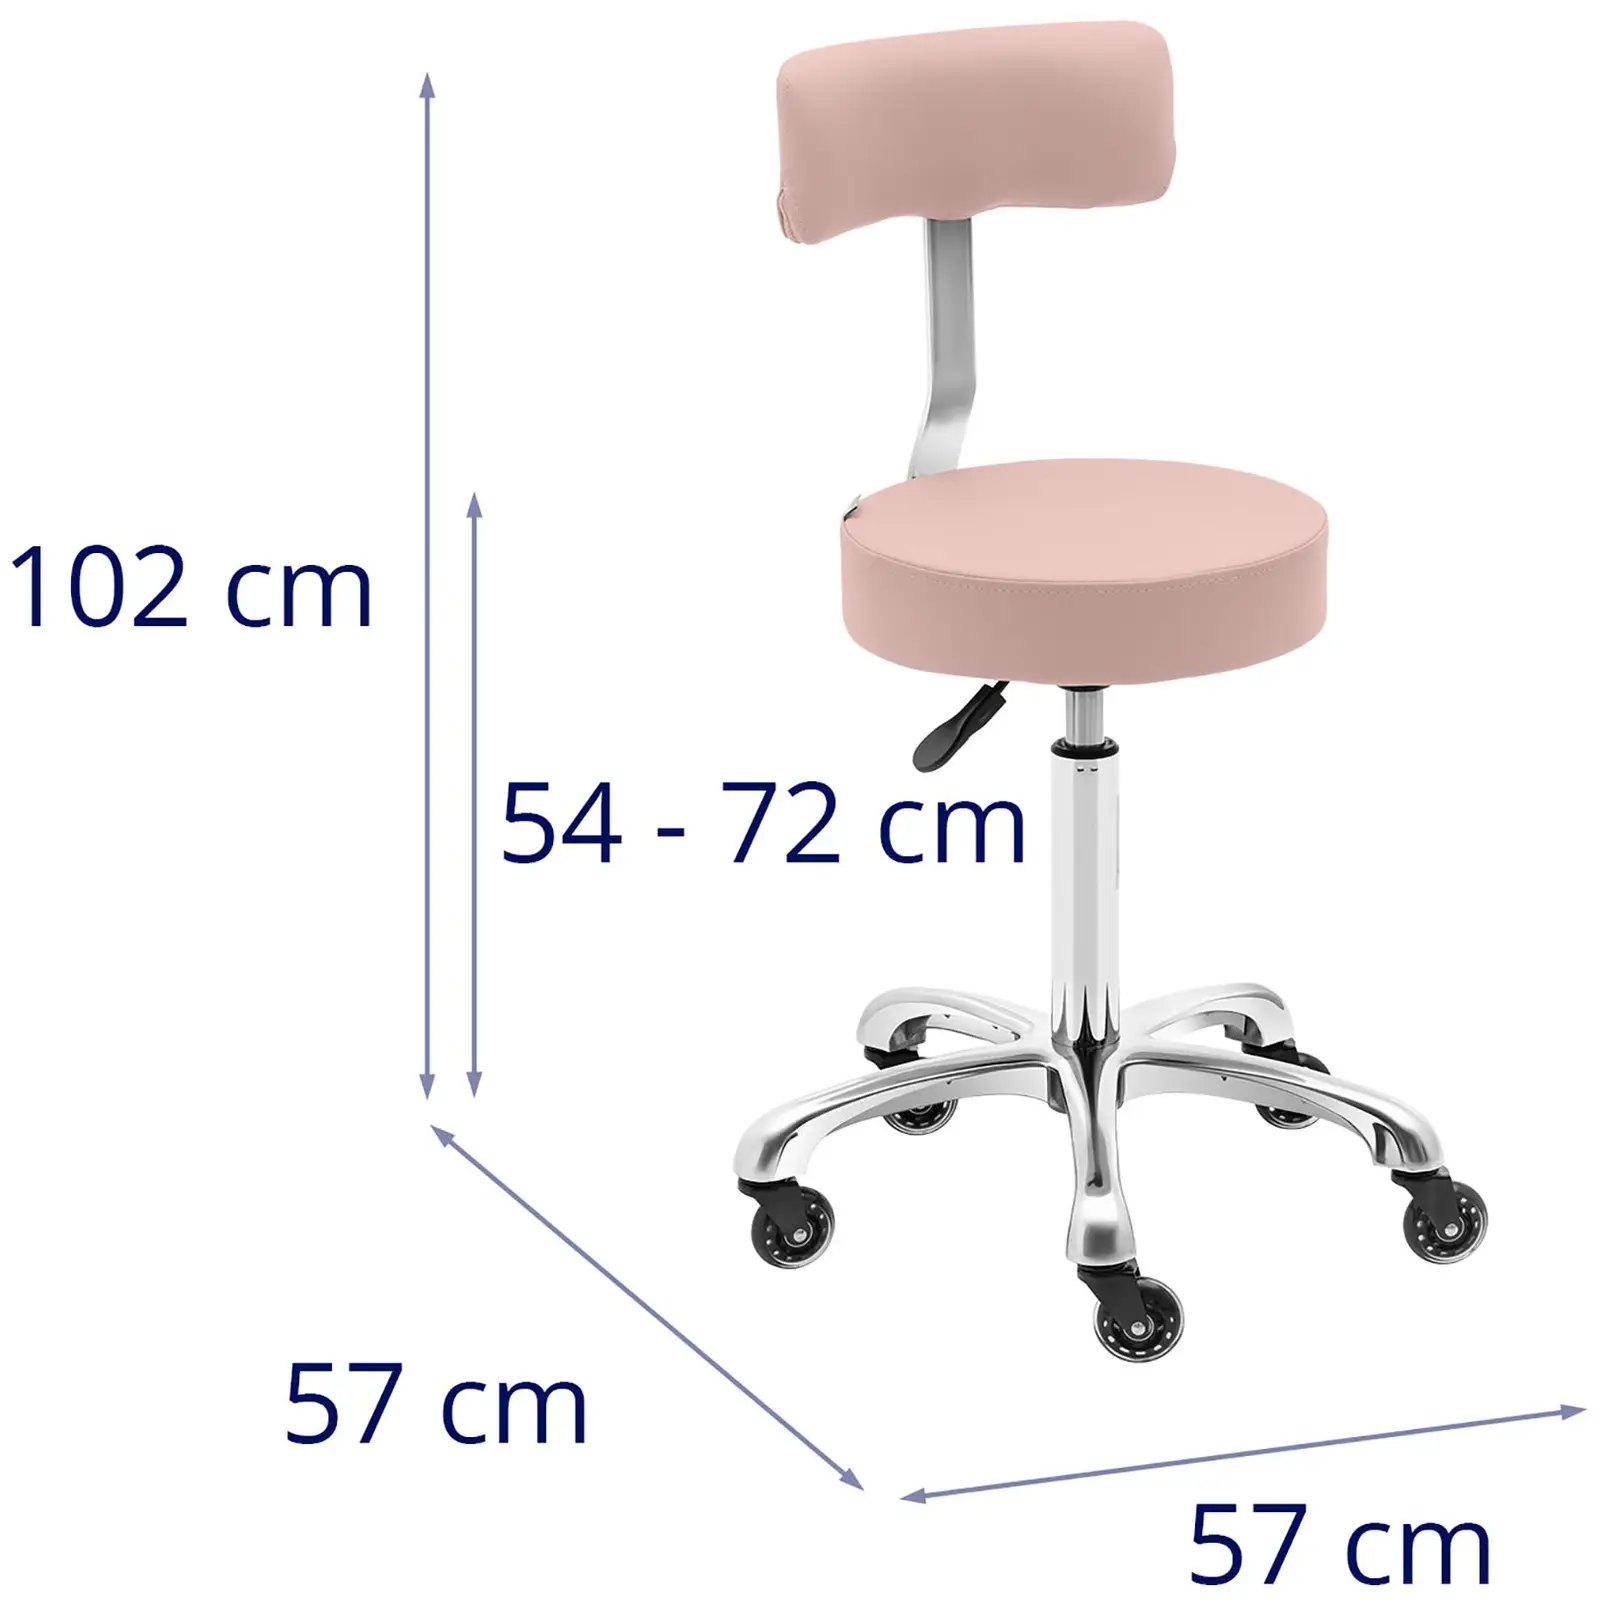 Arbejdsstol med hjul - 540 - 720 mm - pulverlyserød